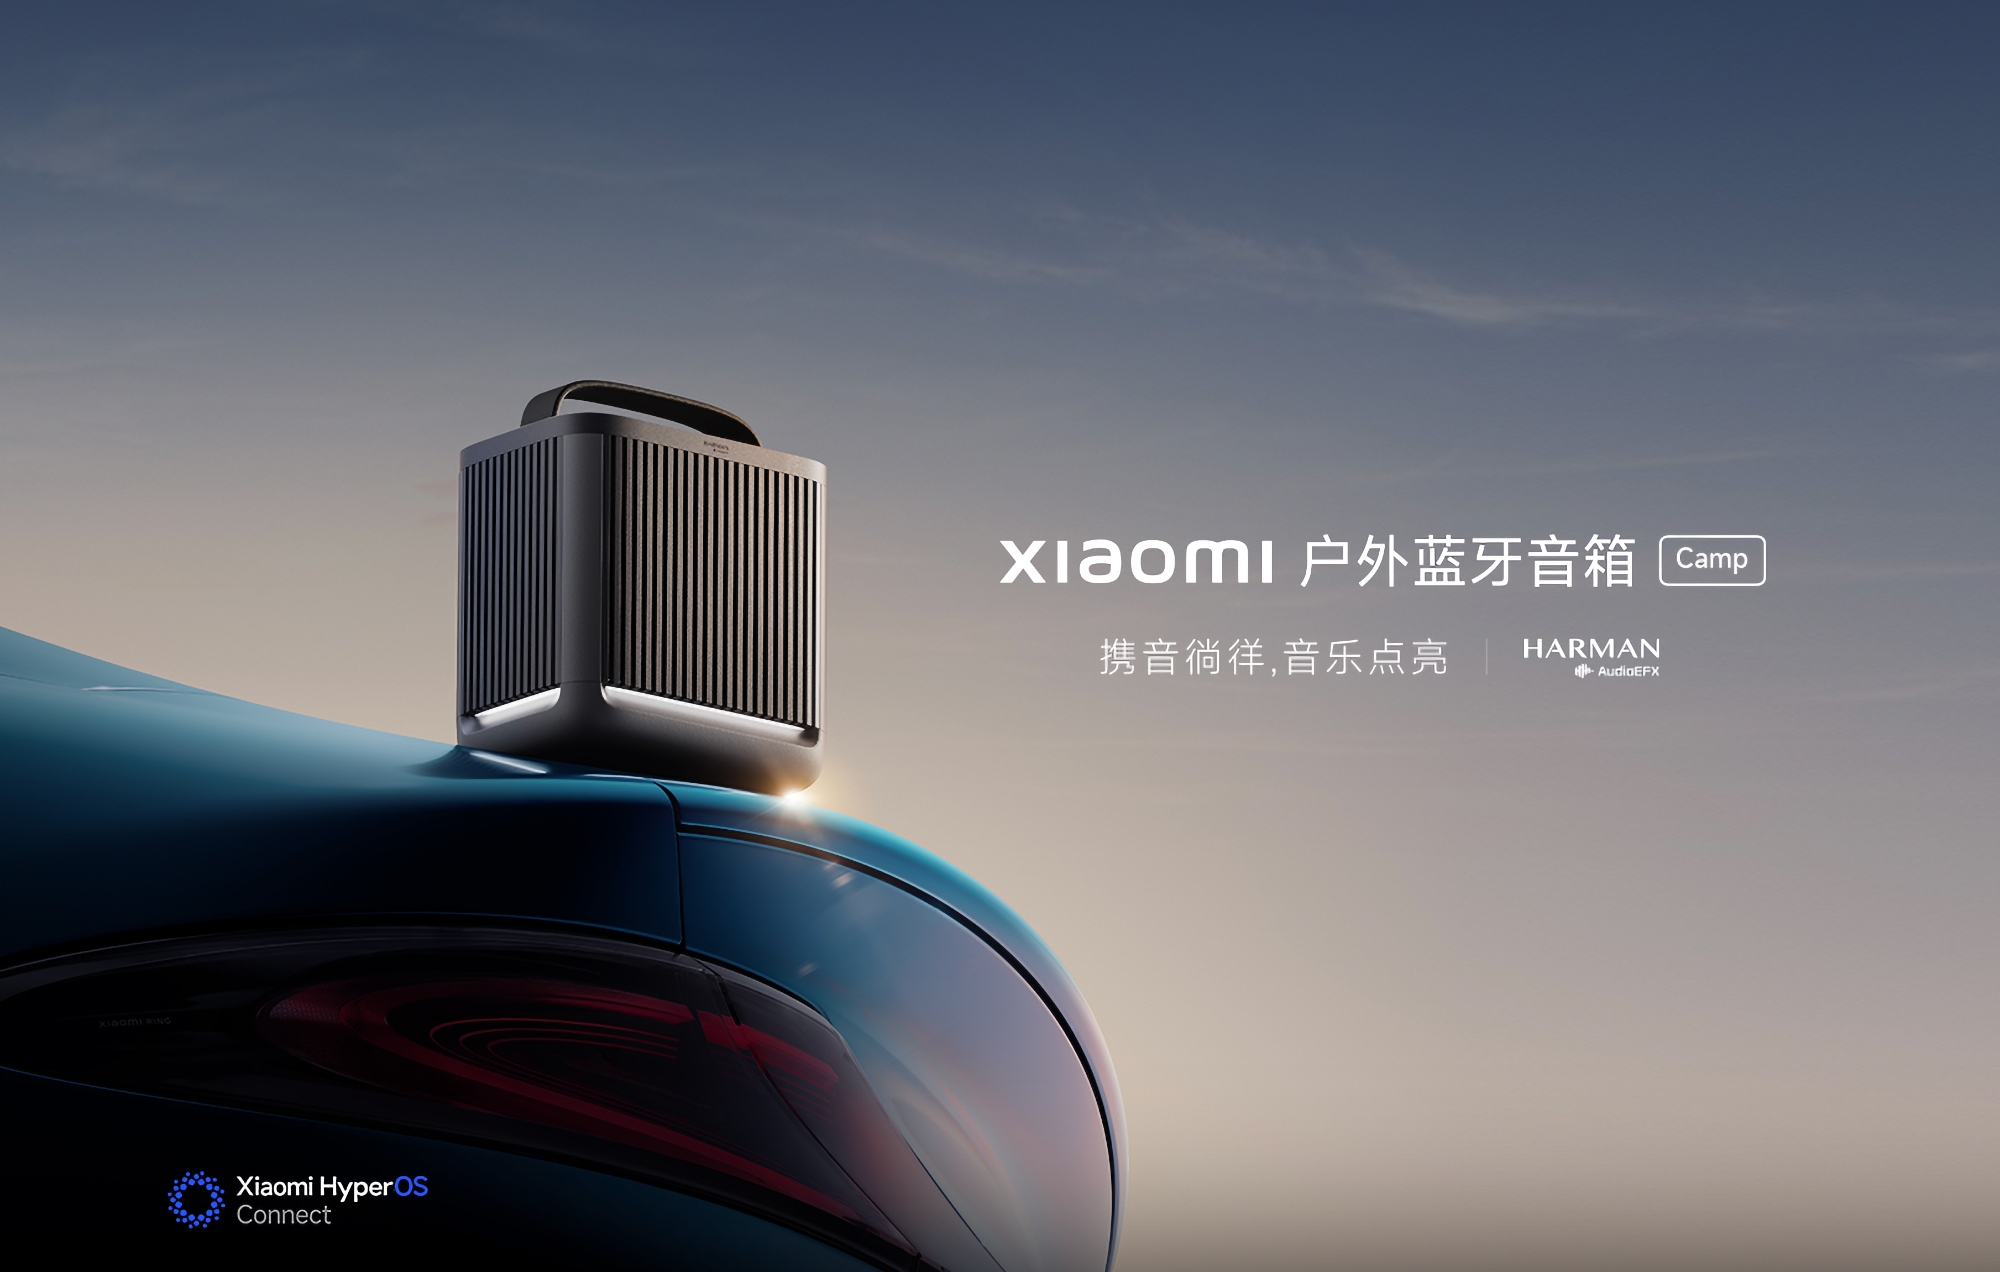 Xiaomi avduket utendørs Bluetooth-høyttaler Camp Edition med 40 W effekt, Harmon AudioEFX-tuning og en pris på 100 dollar